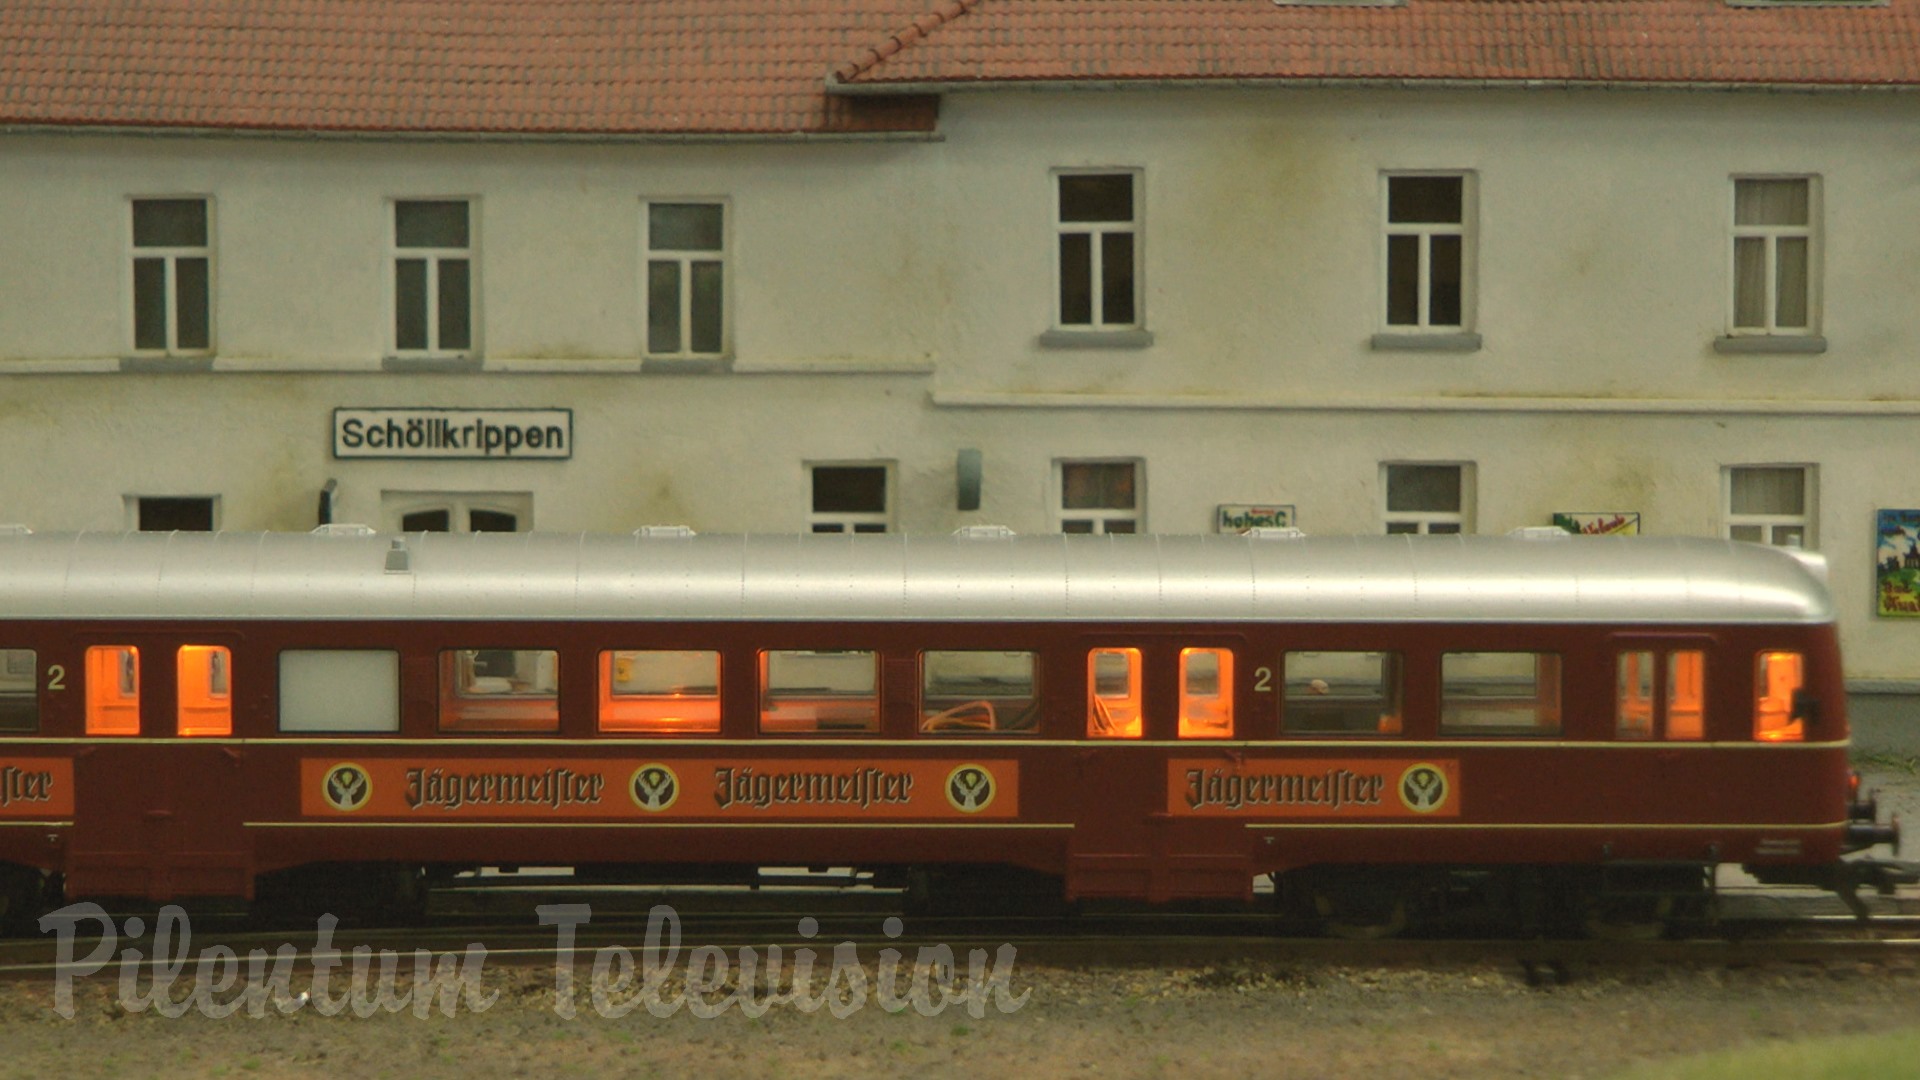 Trenuri într-un sat german - Macheta feroviara la scara 1/87